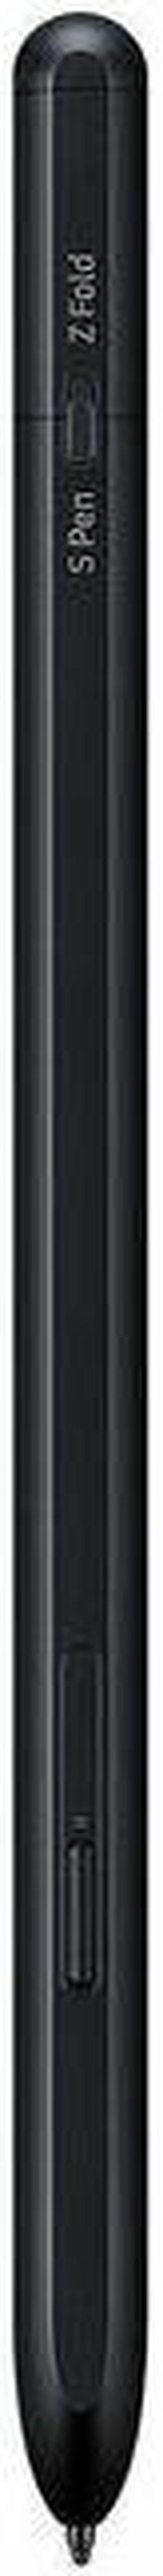 SAMSUNG Galaxy S Pen Pro, Compatible Galaxy Smartphones, Black (EJ-P5450SBEGUS)